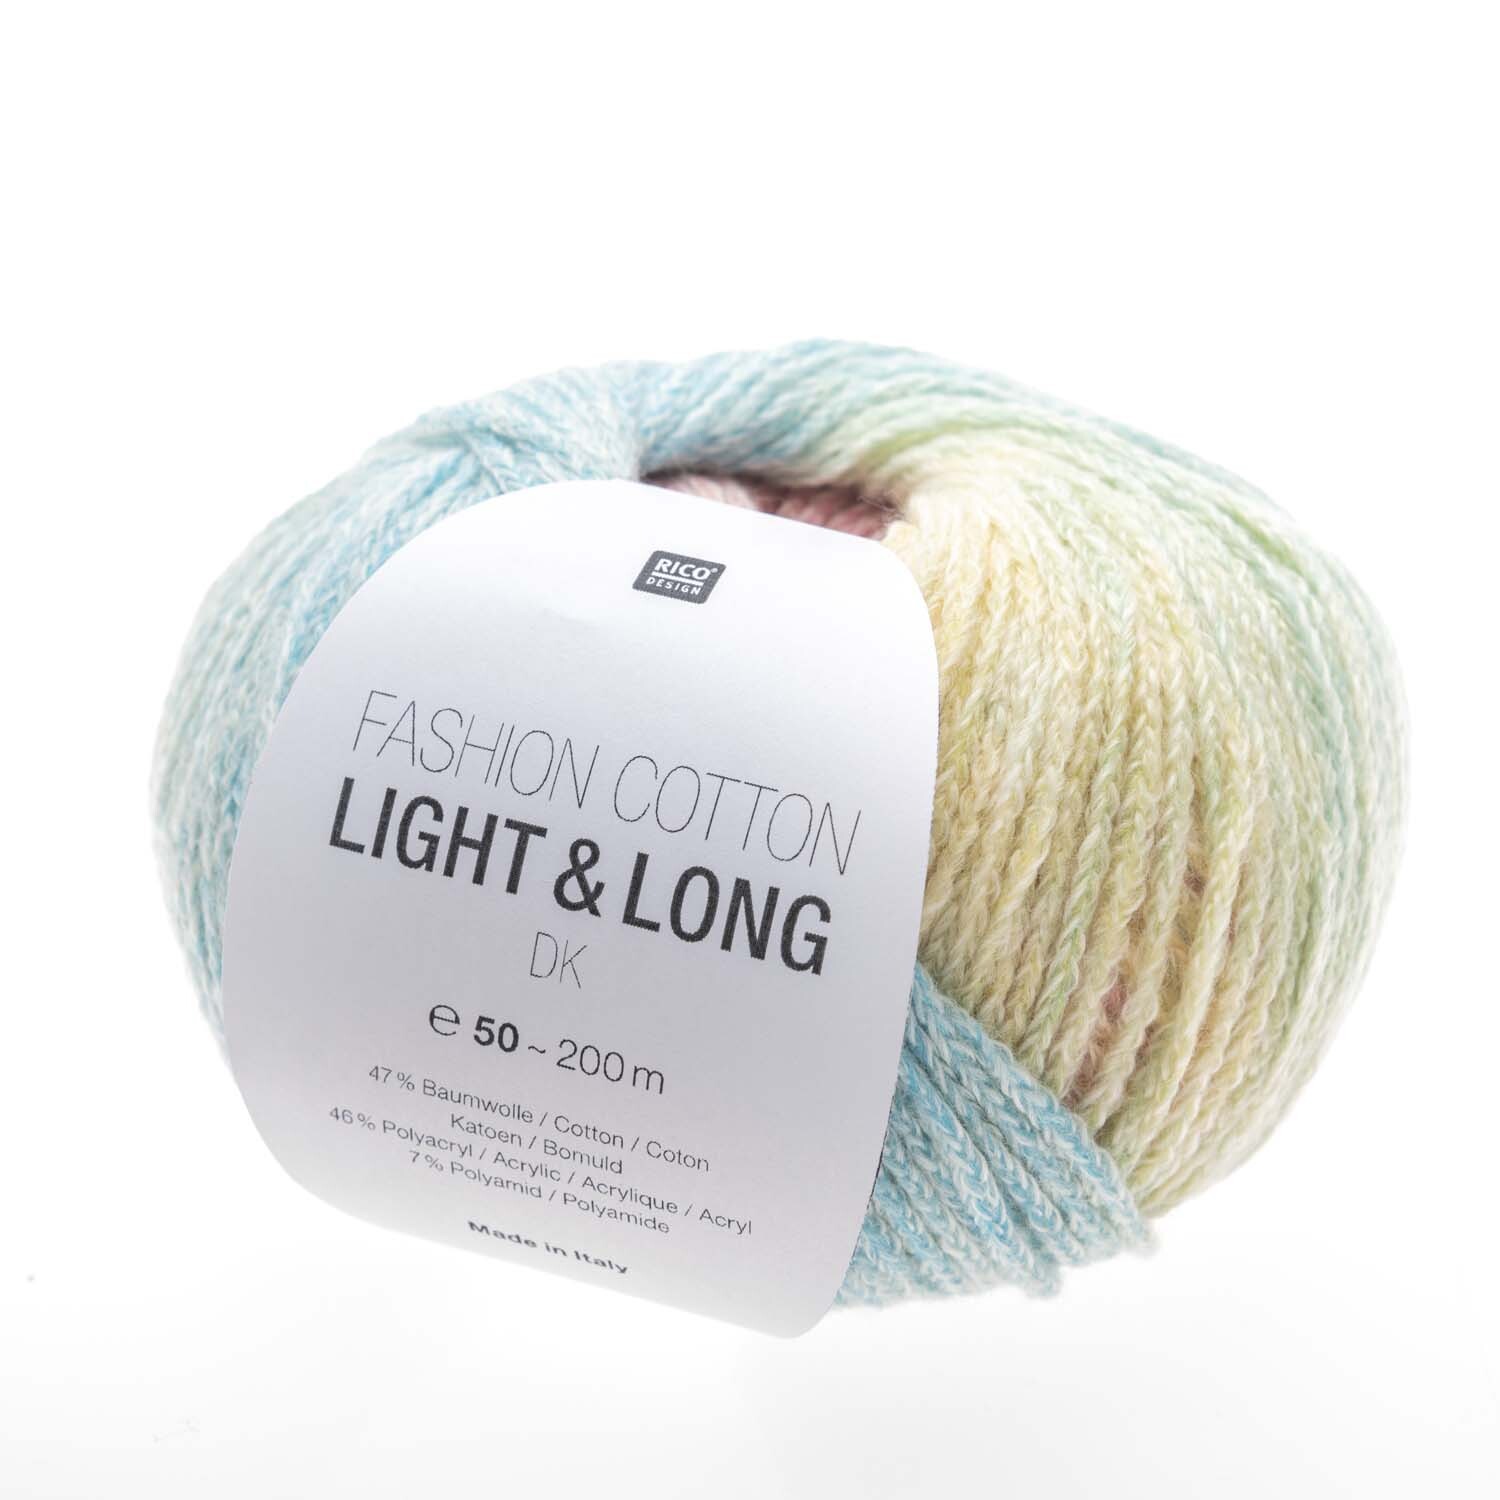 Fashion Cotton Light & Long dk